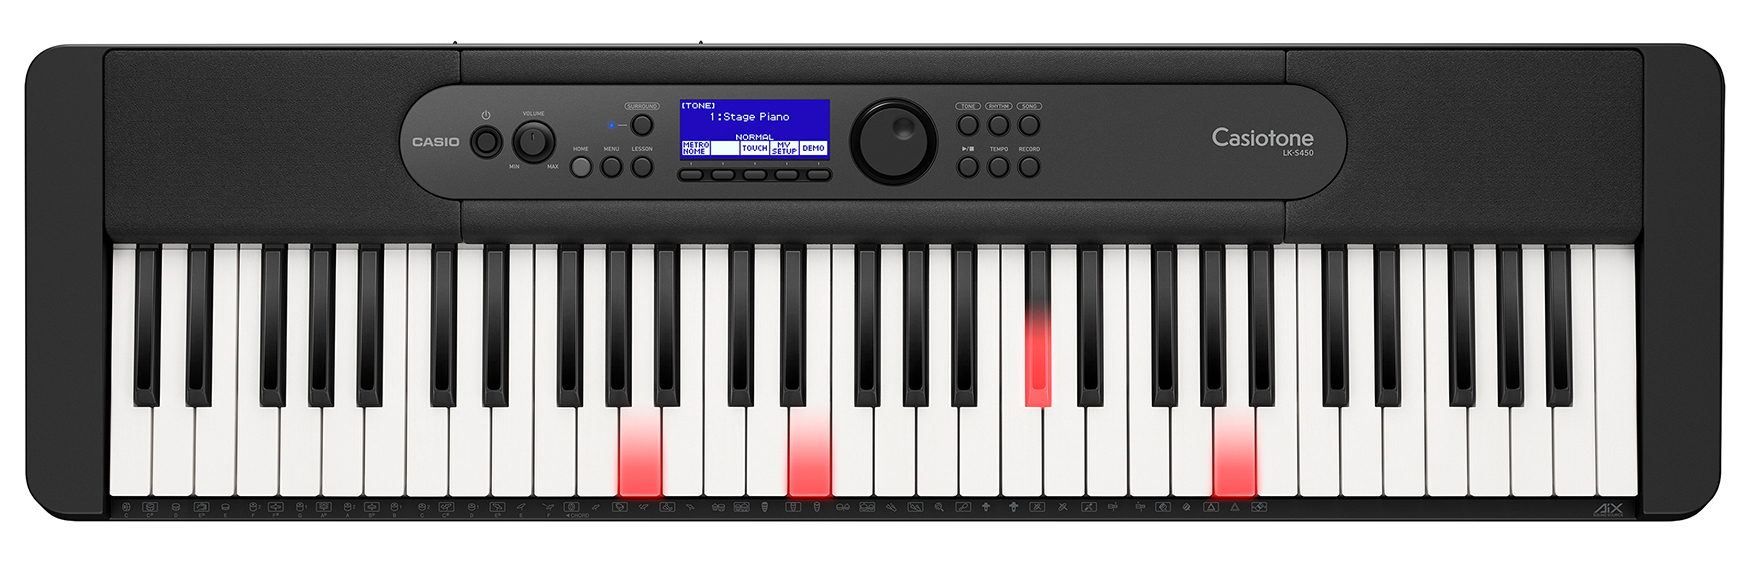 Casio LK-S450 Keyboard med lys i tangenterne